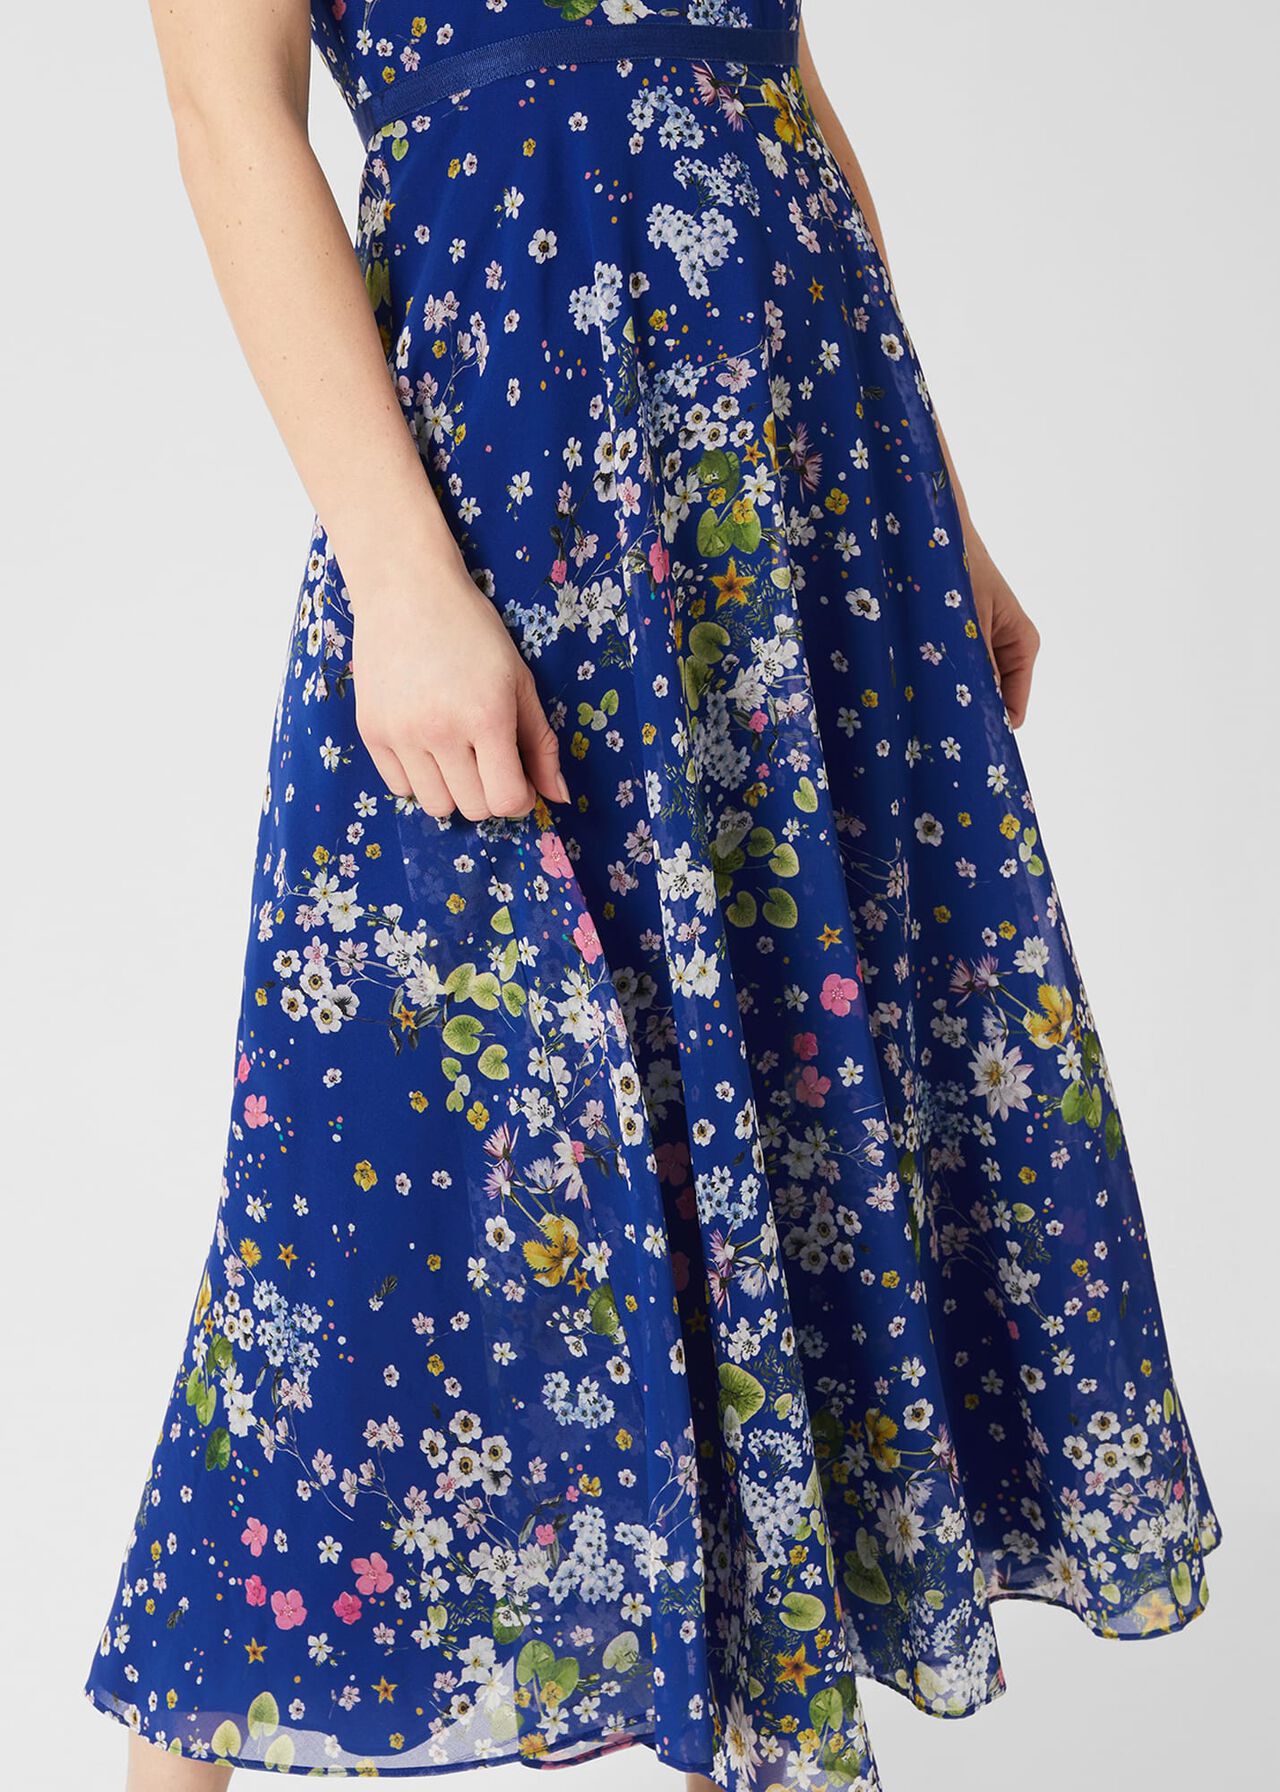 Petite Carly Floral Midi Dress, Cobalt Multi, hi-res